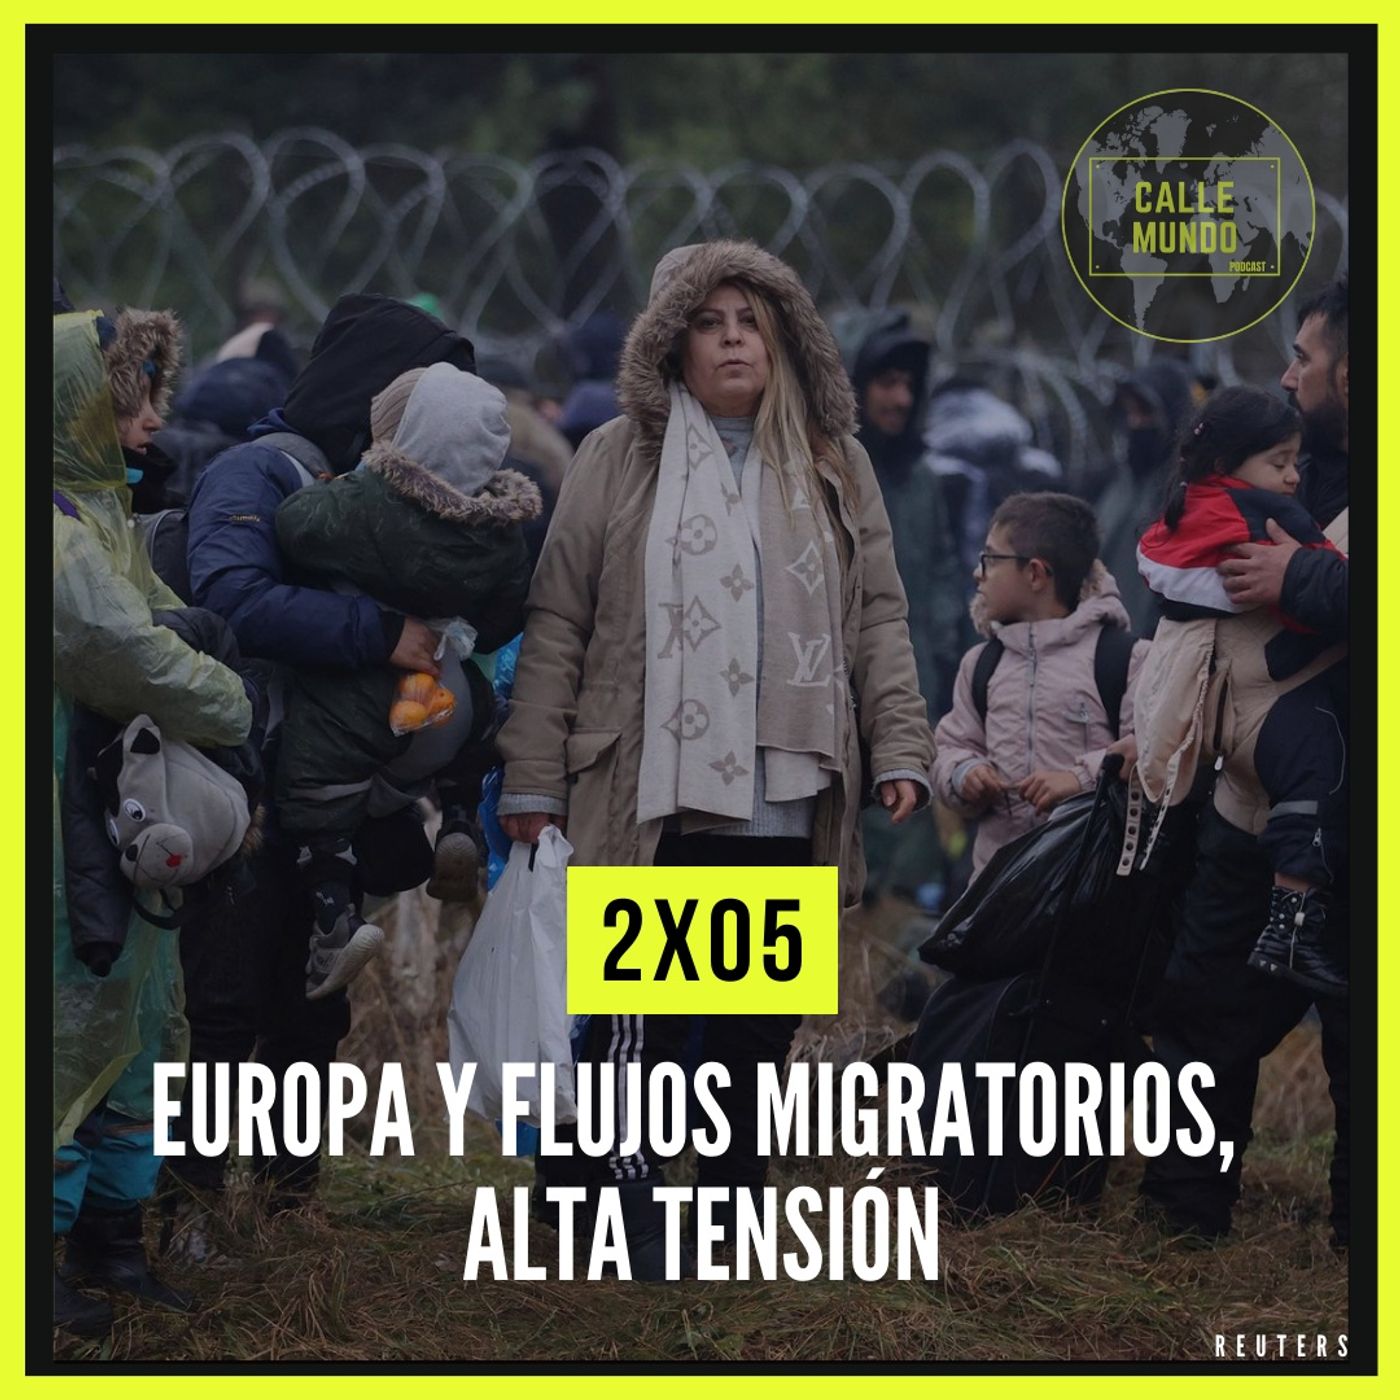 2x05: Europa y flujos migratorios, alta tensión